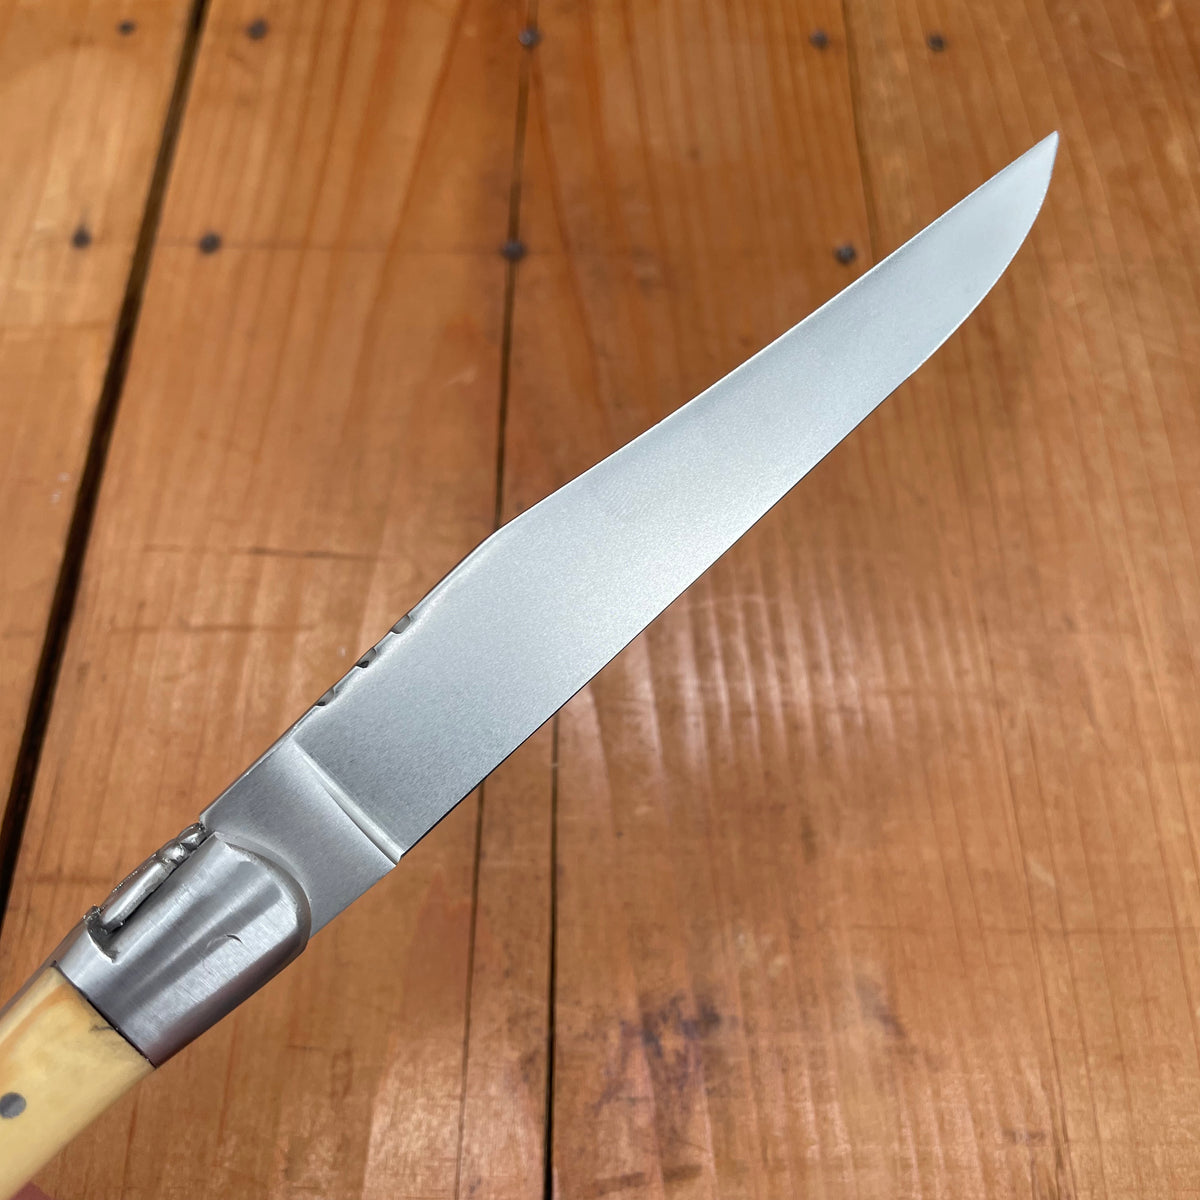 Au Sabot Laguiole Steak Knife Set 6 Mixed Wood In Oak Box